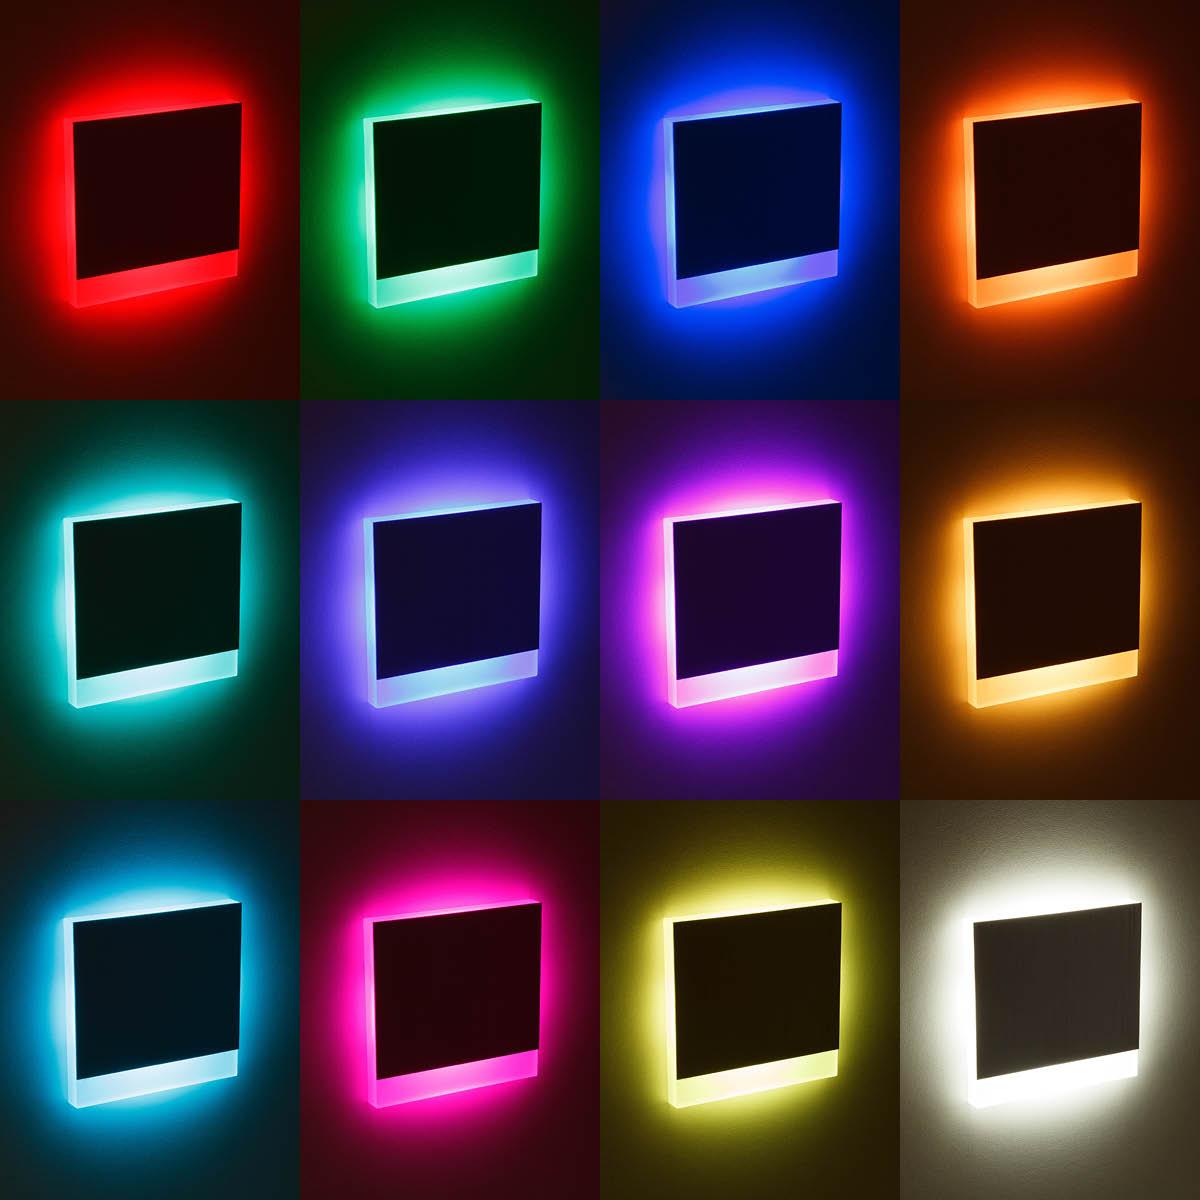 LED Treppenleuchte IP44 eckig Alu-gebürstet - Lichtfarbe: RGB Warmweiß 3W - Lichtaustritt: Orbis